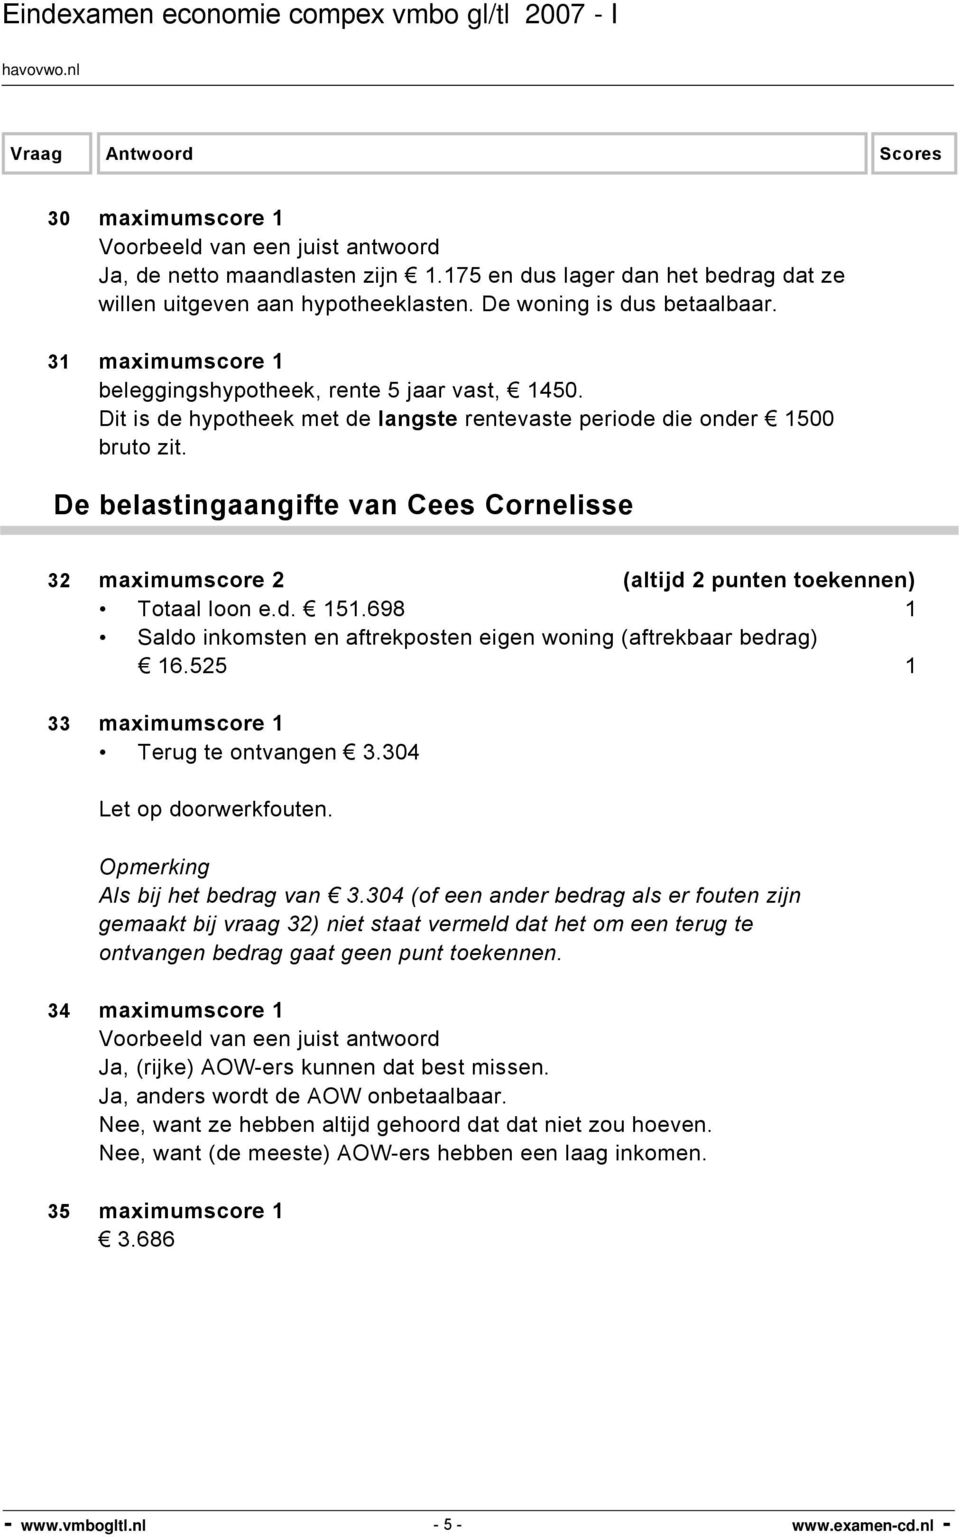 De belastingaangifte van Cees Cornelisse 32 maximumscore 2 (altijd 2 punten toekennen) Totaal loon e.d. 151.698 1 Saldo inkomsten en aftrekposten eigen woning (aftrekbaar bedrag) 16.